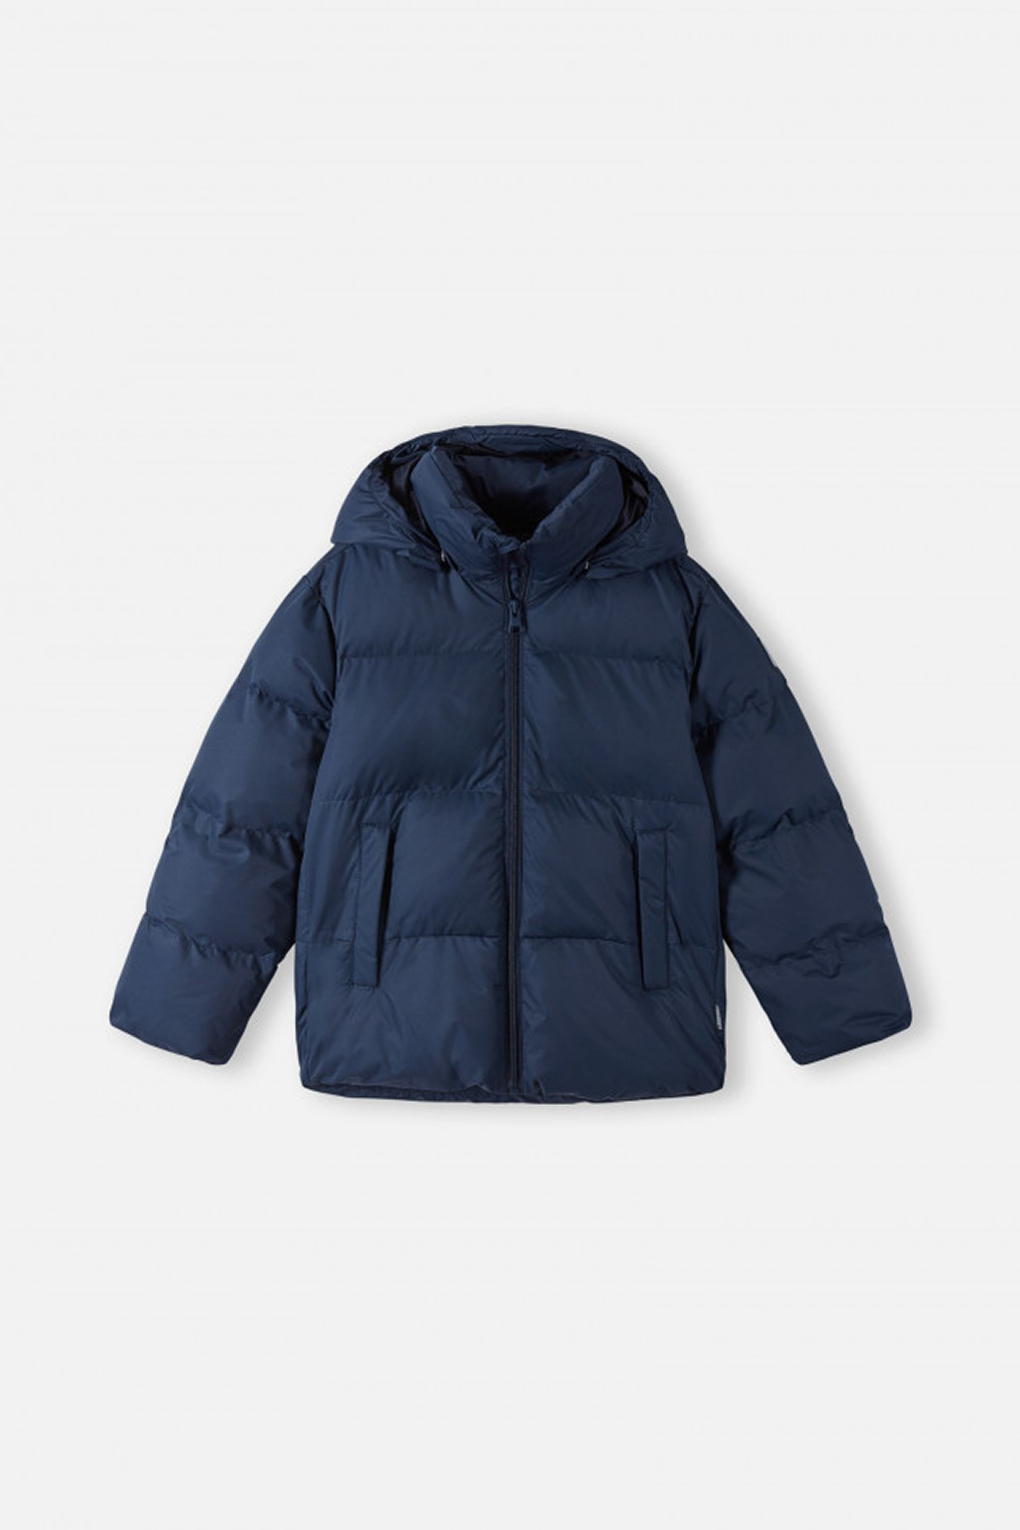 Куртка детская Reima 5100104A синий, 104